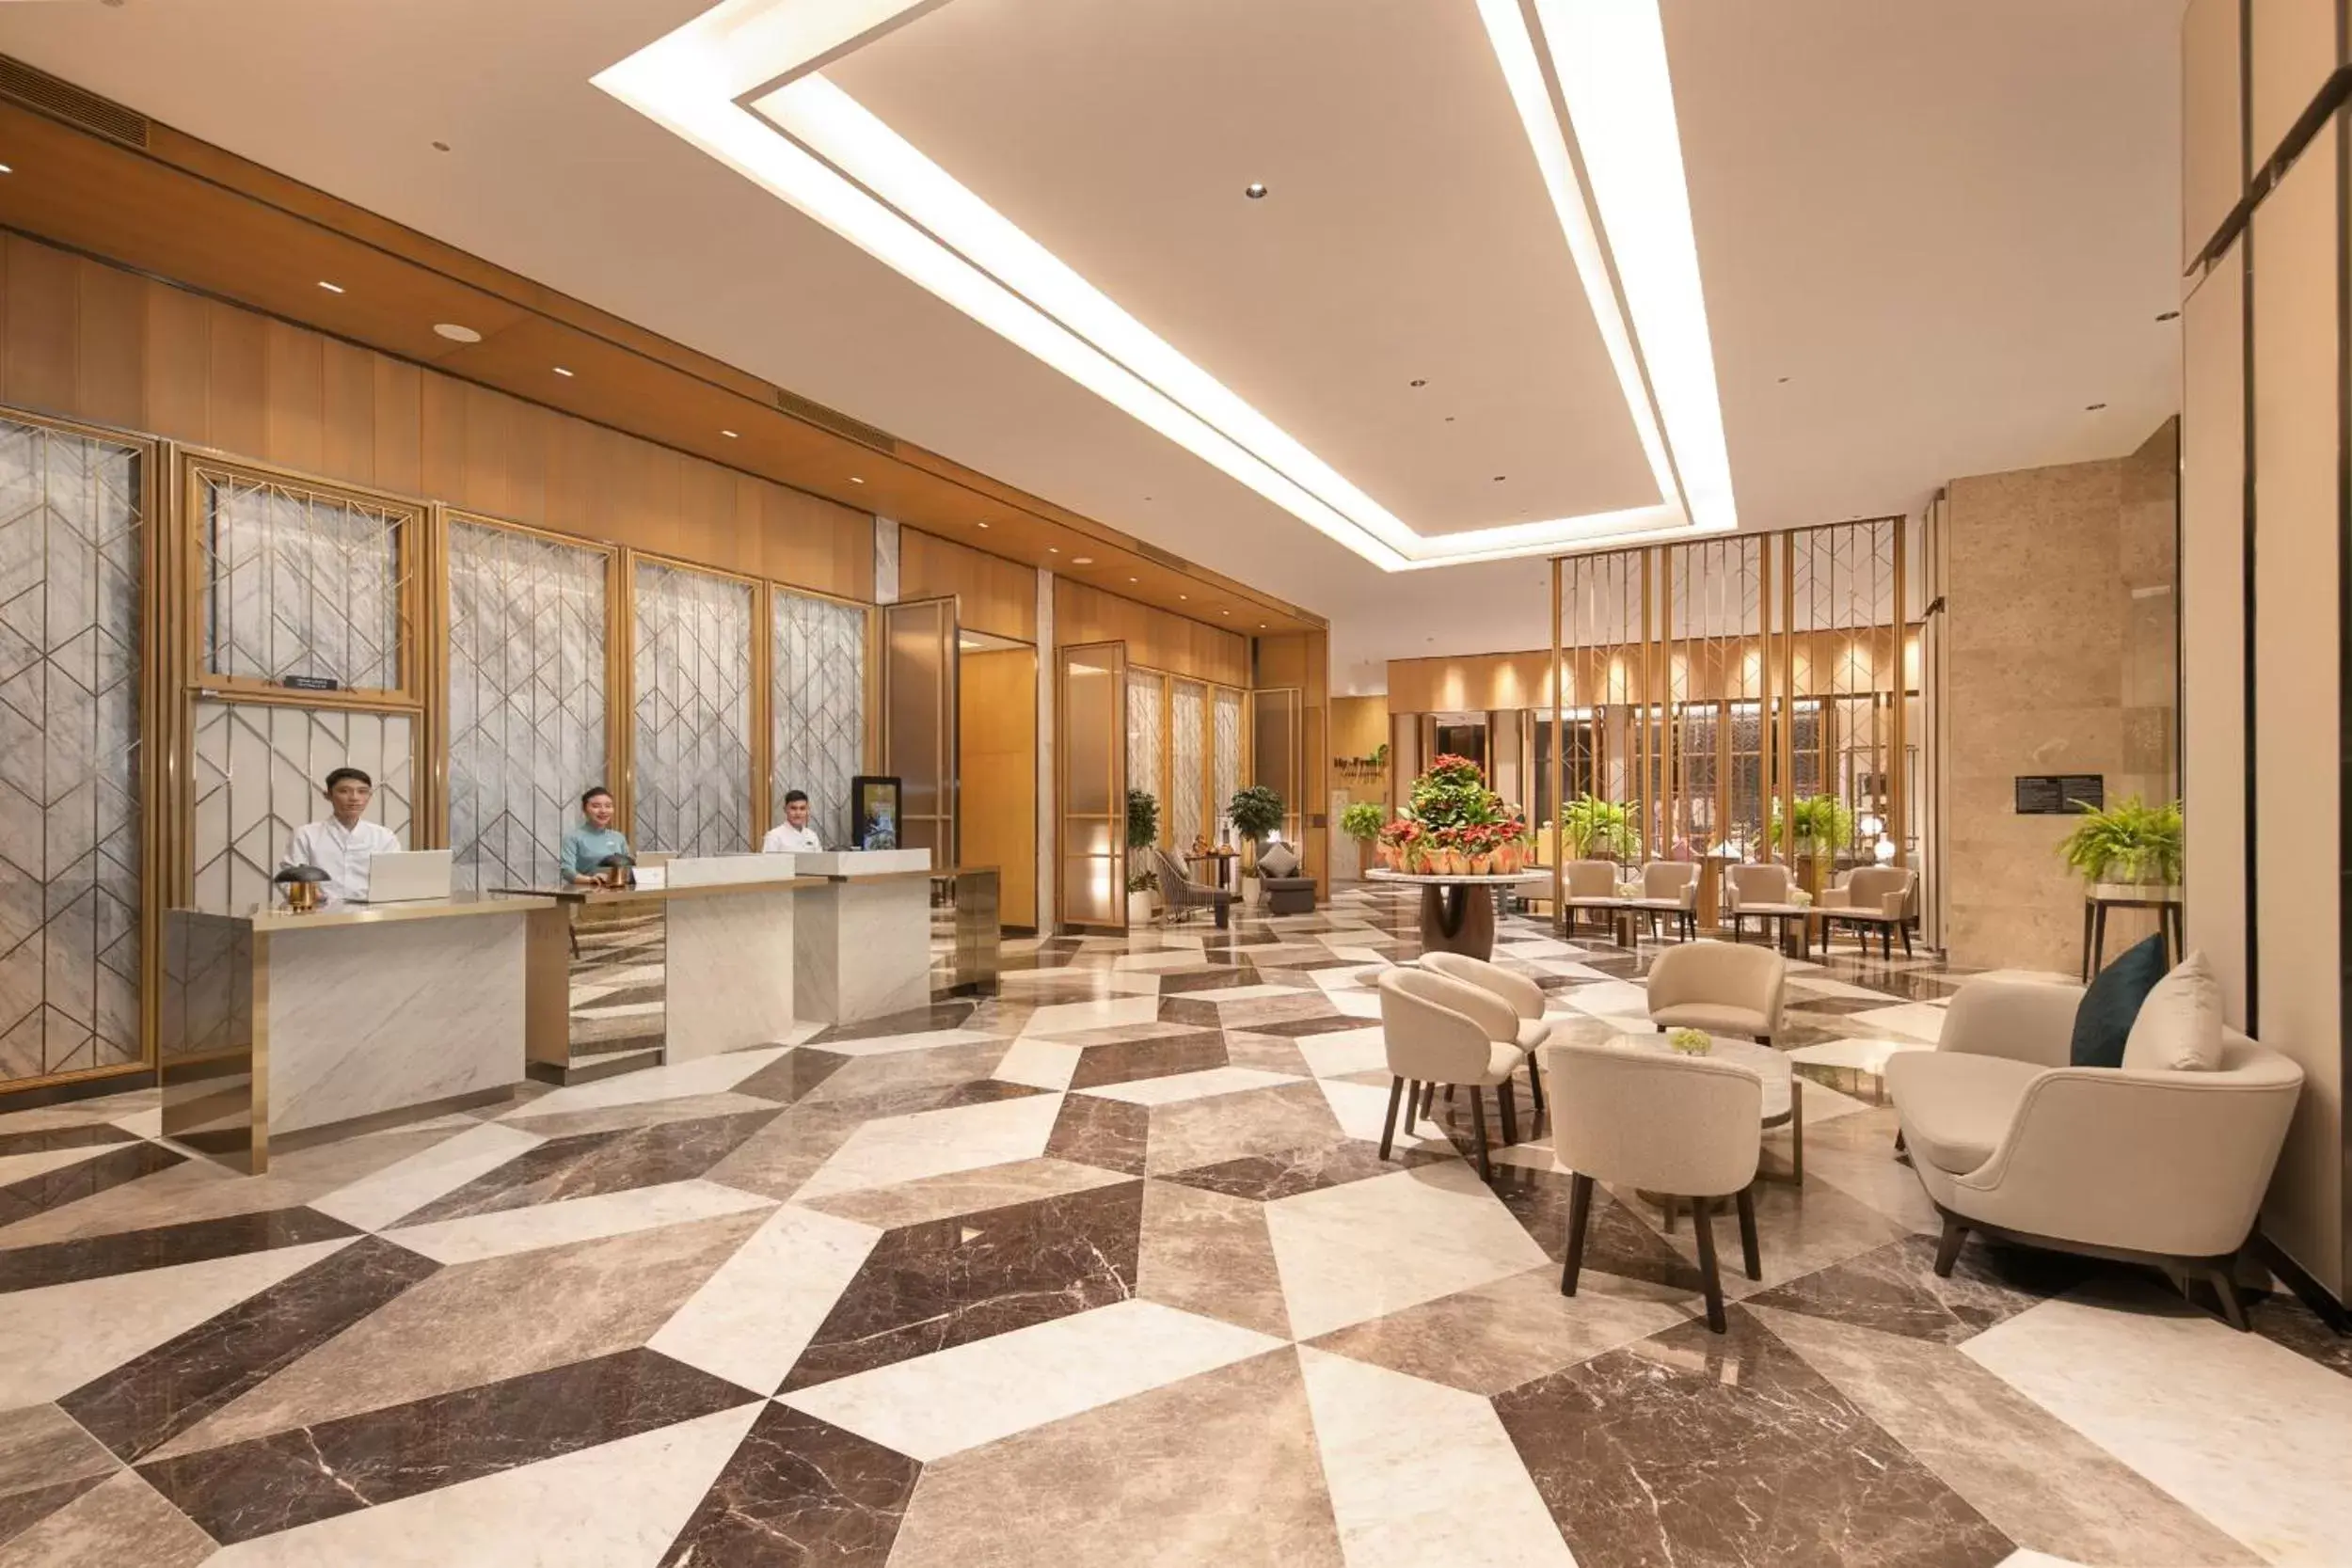 Lobby or reception in Grand Hyams Hotel - Quy Nhon Beach